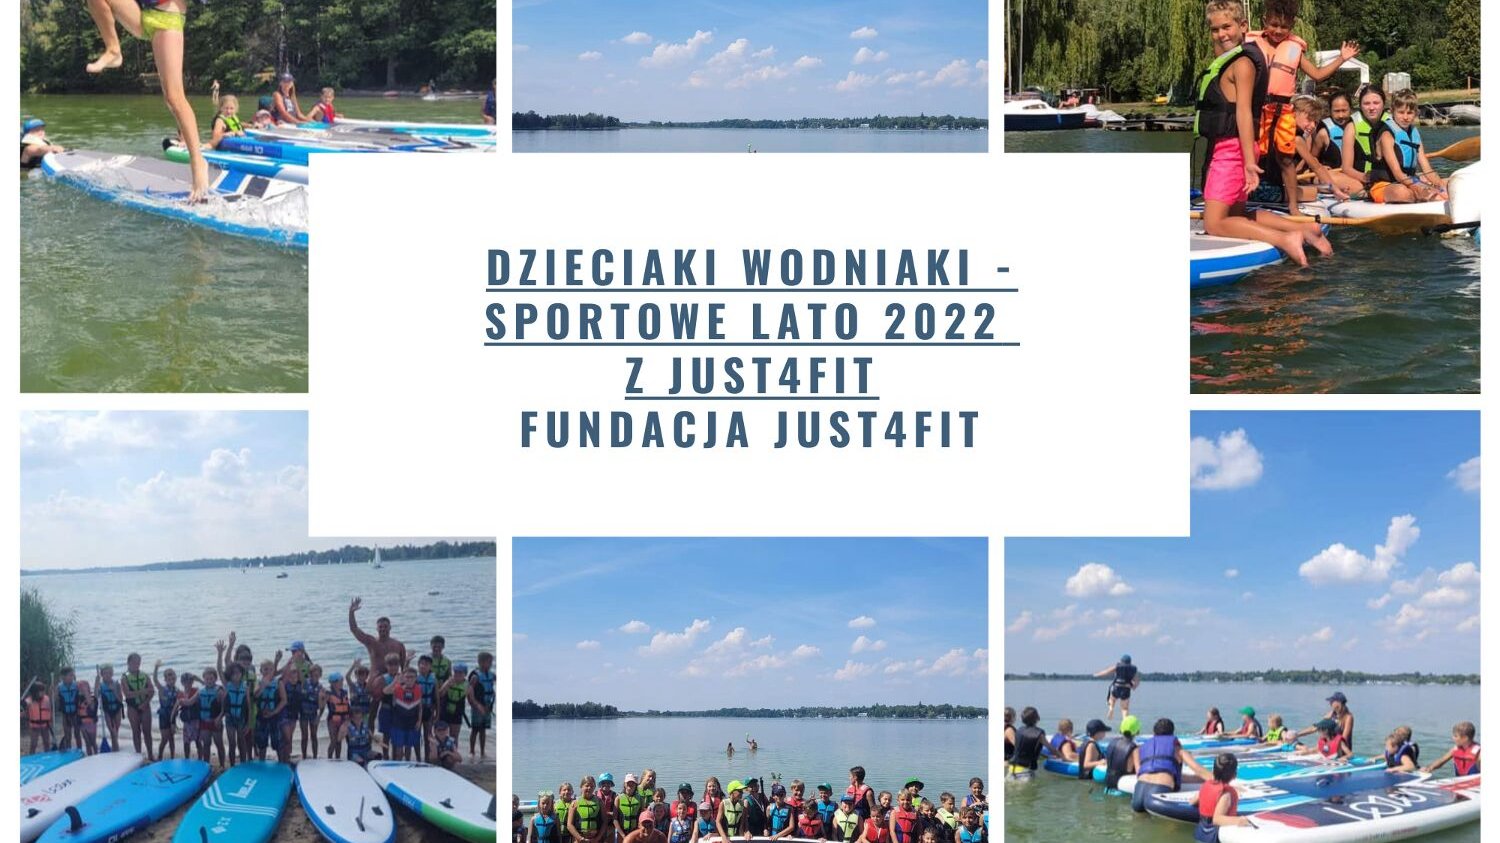 Plakat, na plakacie zdjęcia z jeziorami i dziećmi aktywnie spędzającymi czas w wodzie i nad wodą, na środku plakatu napis: Dzieciaki wodniaki - Sportowe Lato 2022 z Just4fit Fundacja Just4fit